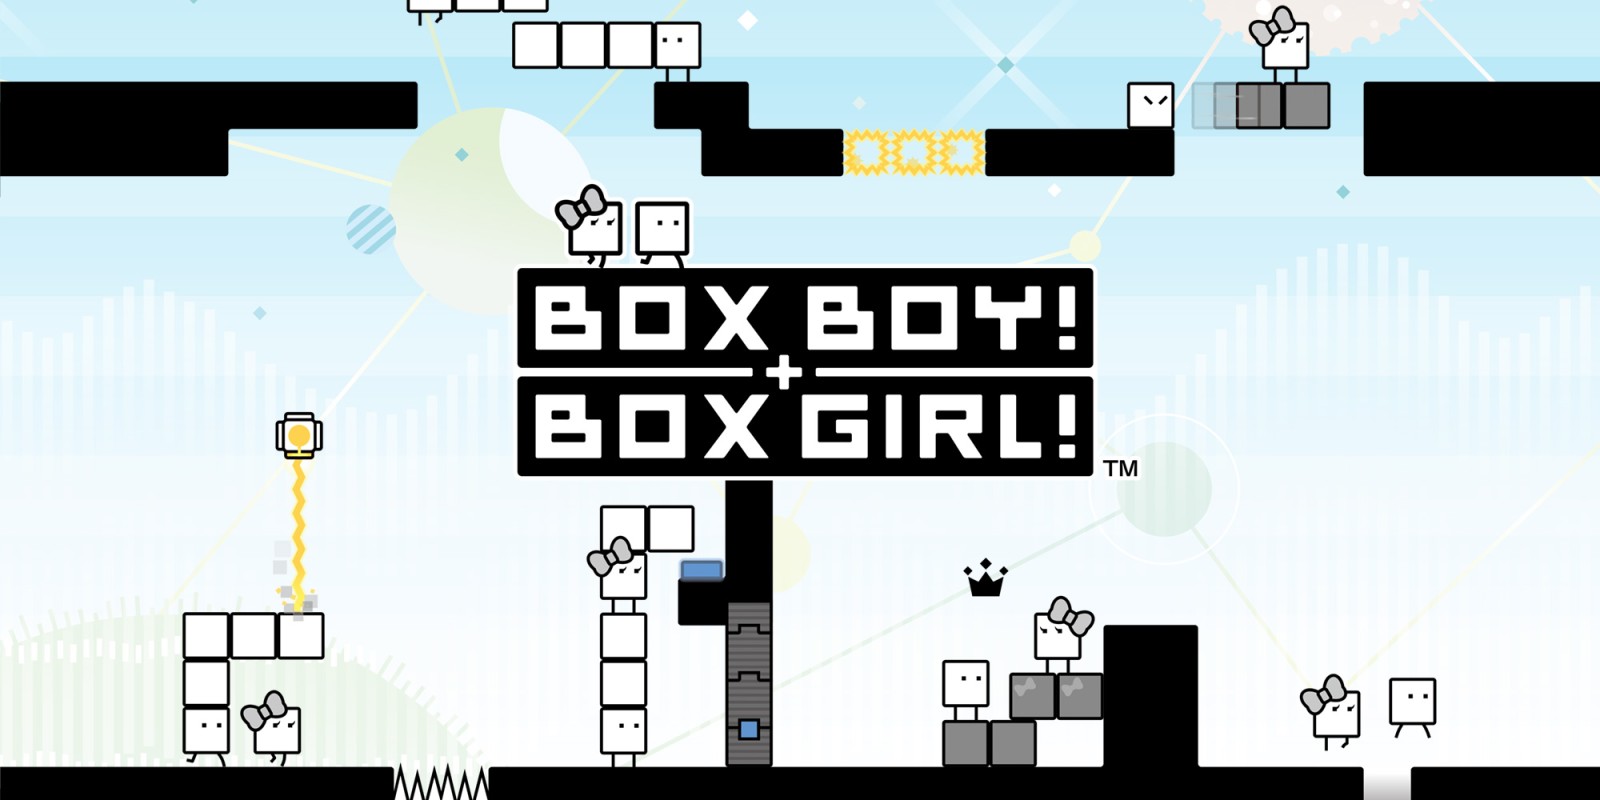 BOXBOY! + BOXGIRL! топ игры сега онлайн и денди играть бесплатно смотреть все скачать